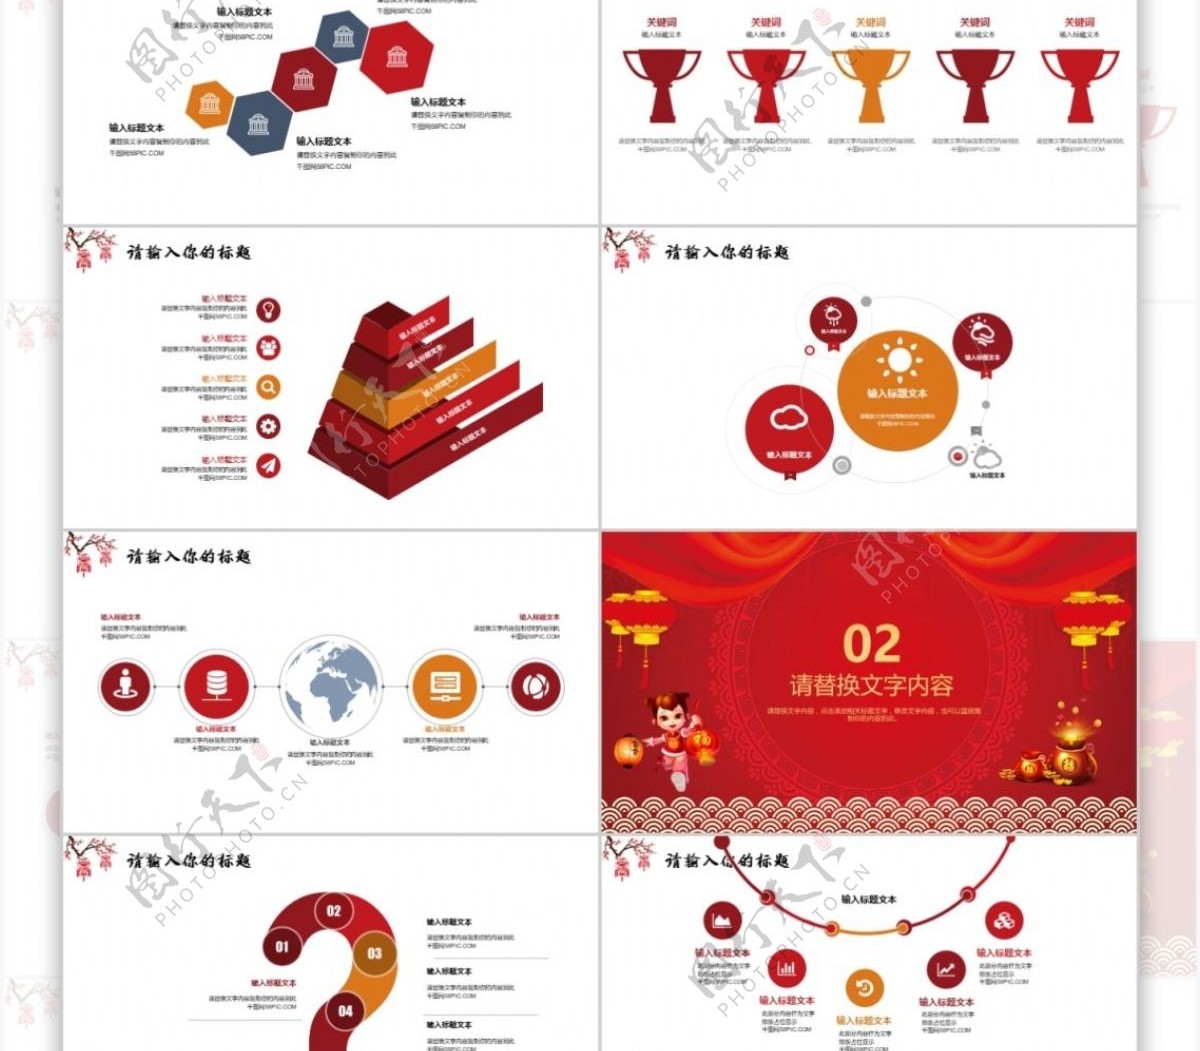 中国红年终工作总结汇报企业年会PPT模板